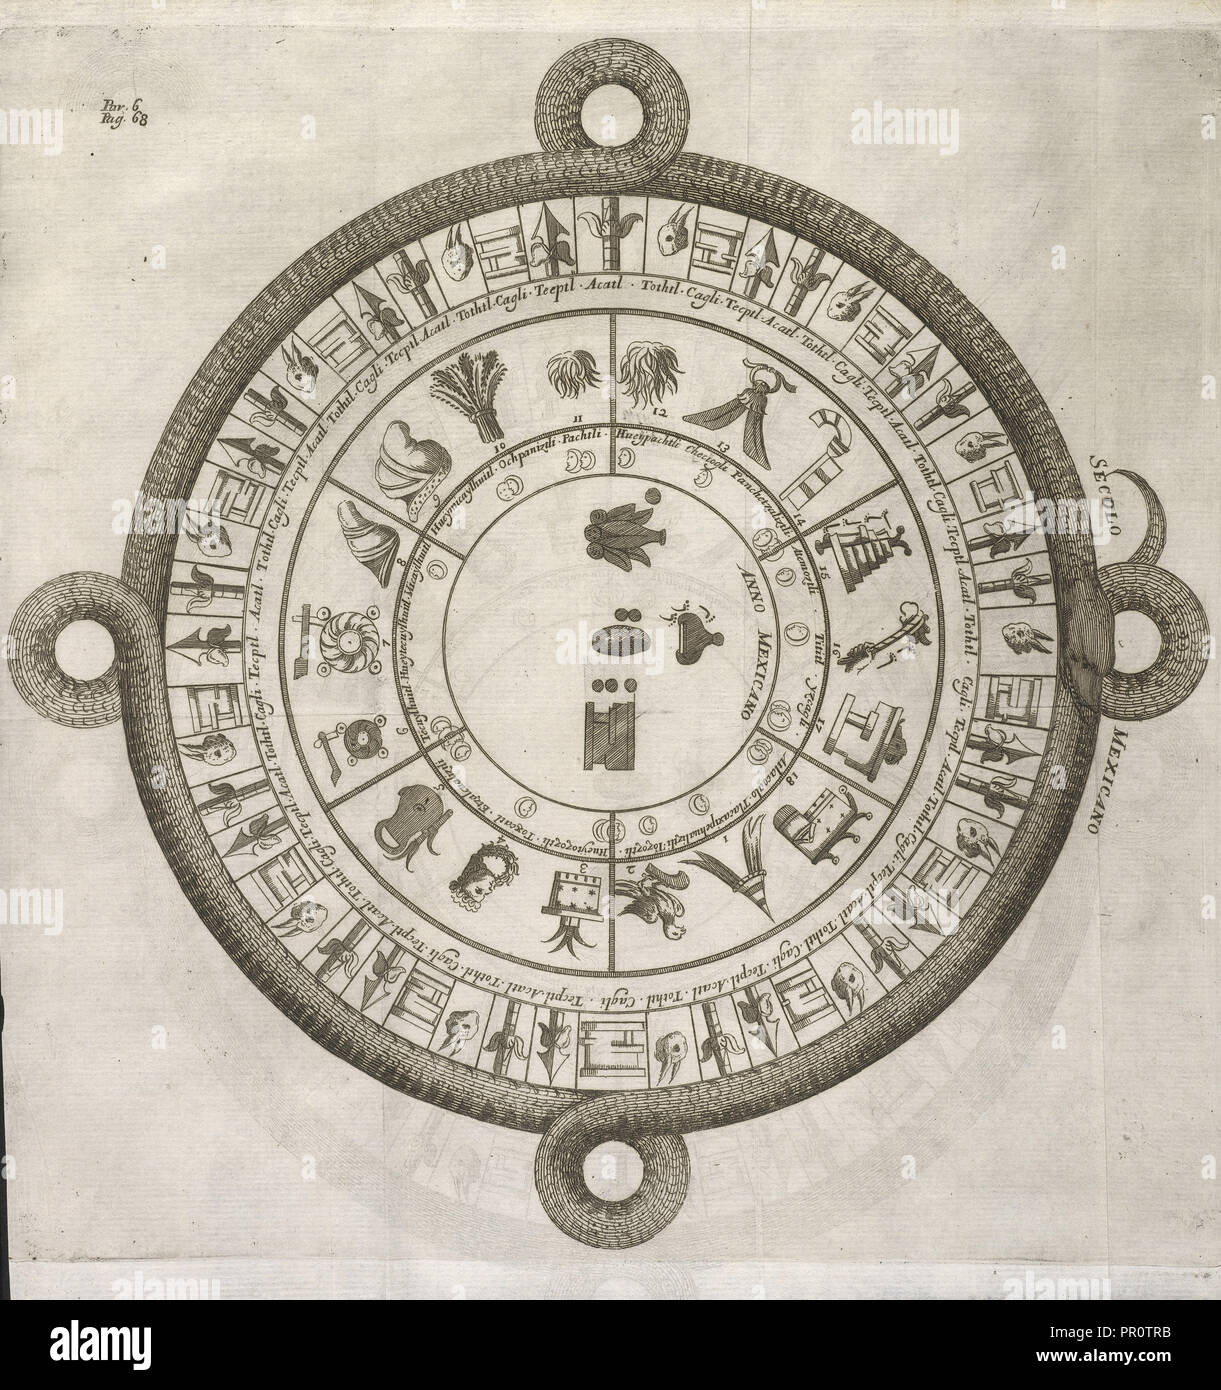 Aztec calendar, Giro del mondo del dottor d. Gio. Francesco Gemelli Careri, Gemelli Careri, Giovanni Francesco, 1651-1725 Stock Photo